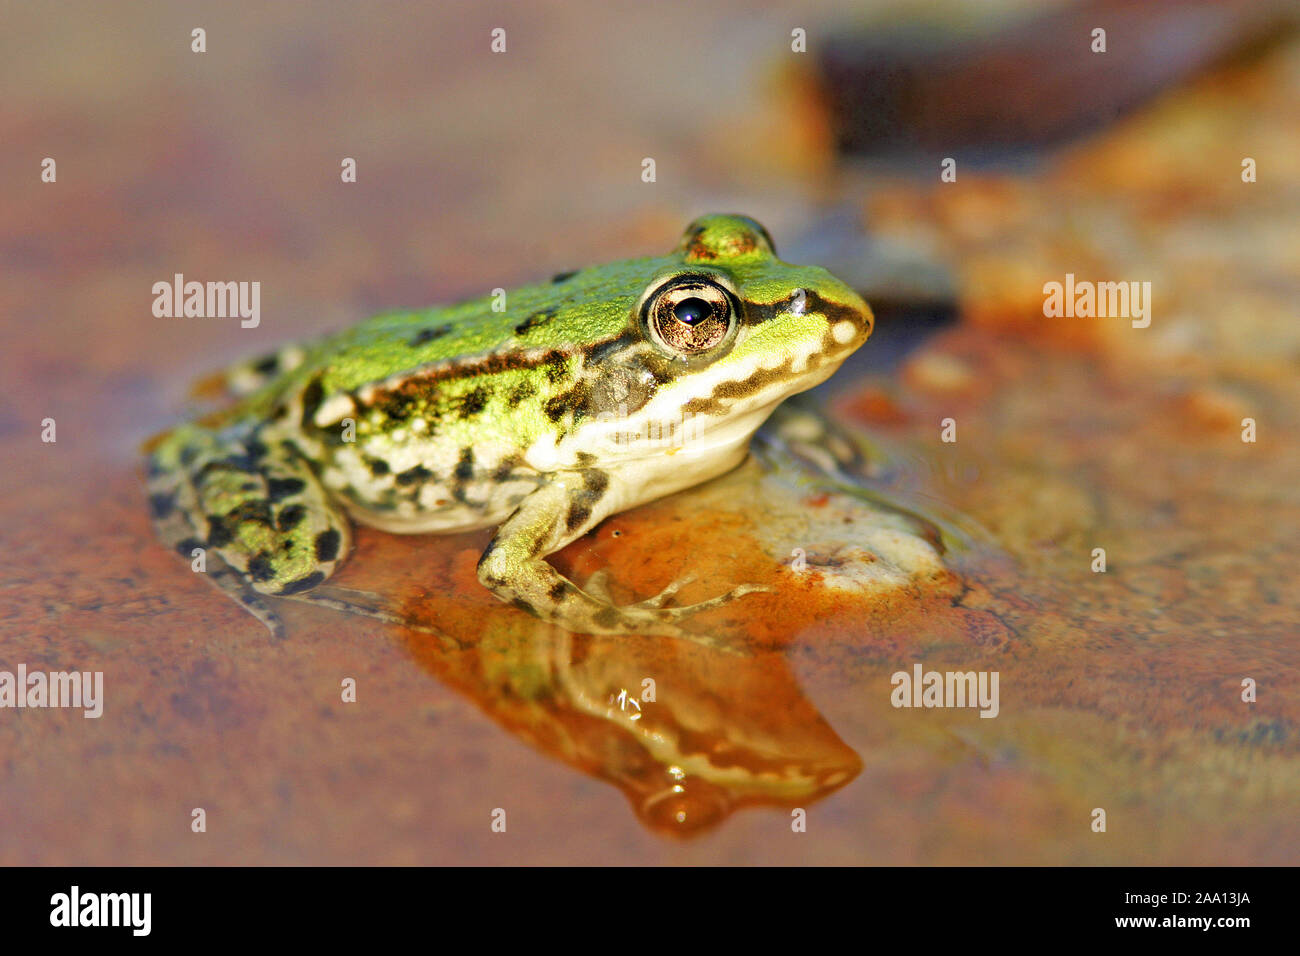 Grünfrosch sitzt in einer Pfütze / Green frog is sitinging in a puddle Stock Photo